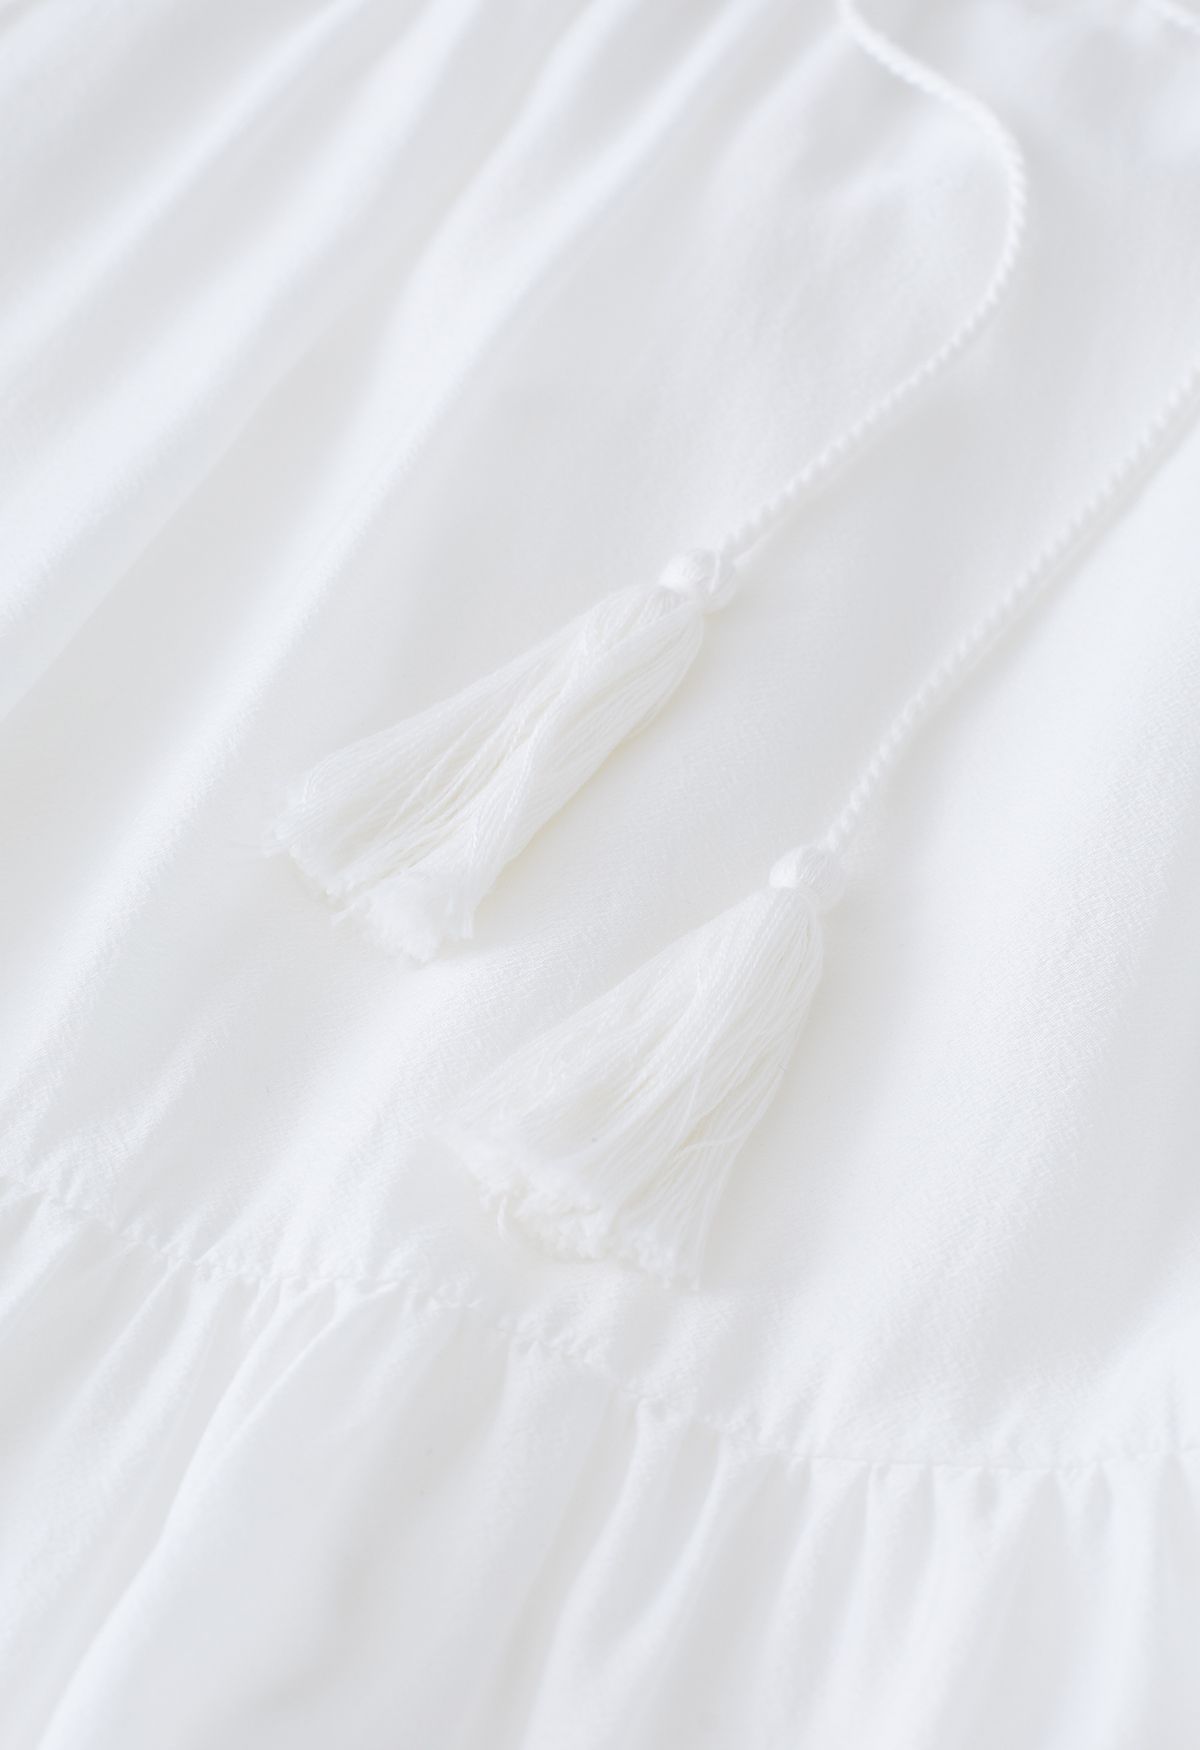 Beautiful Goddess Puff Sleeve White Dress